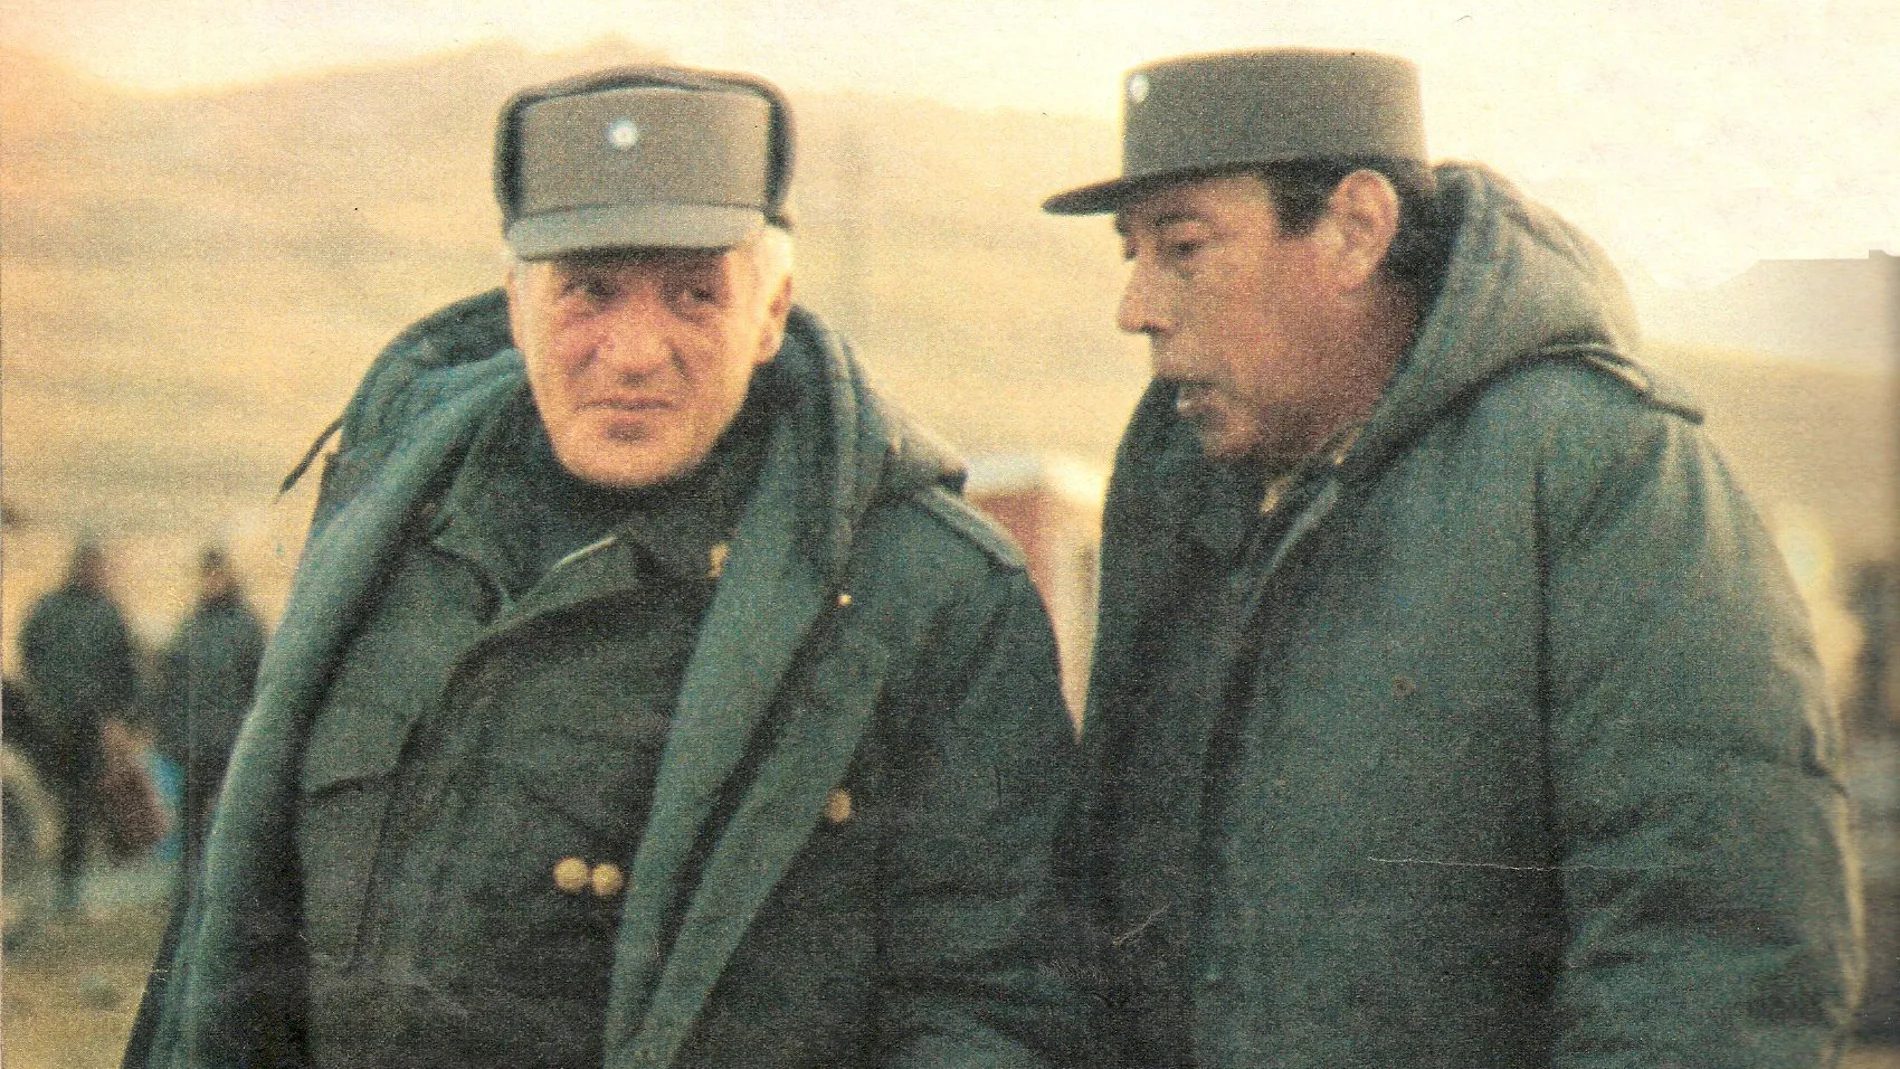 El general Leopoldo Fortunato Galtieri (a la izquierda), junto al general Jofre (derecha), comandante en jefe de la defensa de las Malvinas, durante la visita del primero a las islas.